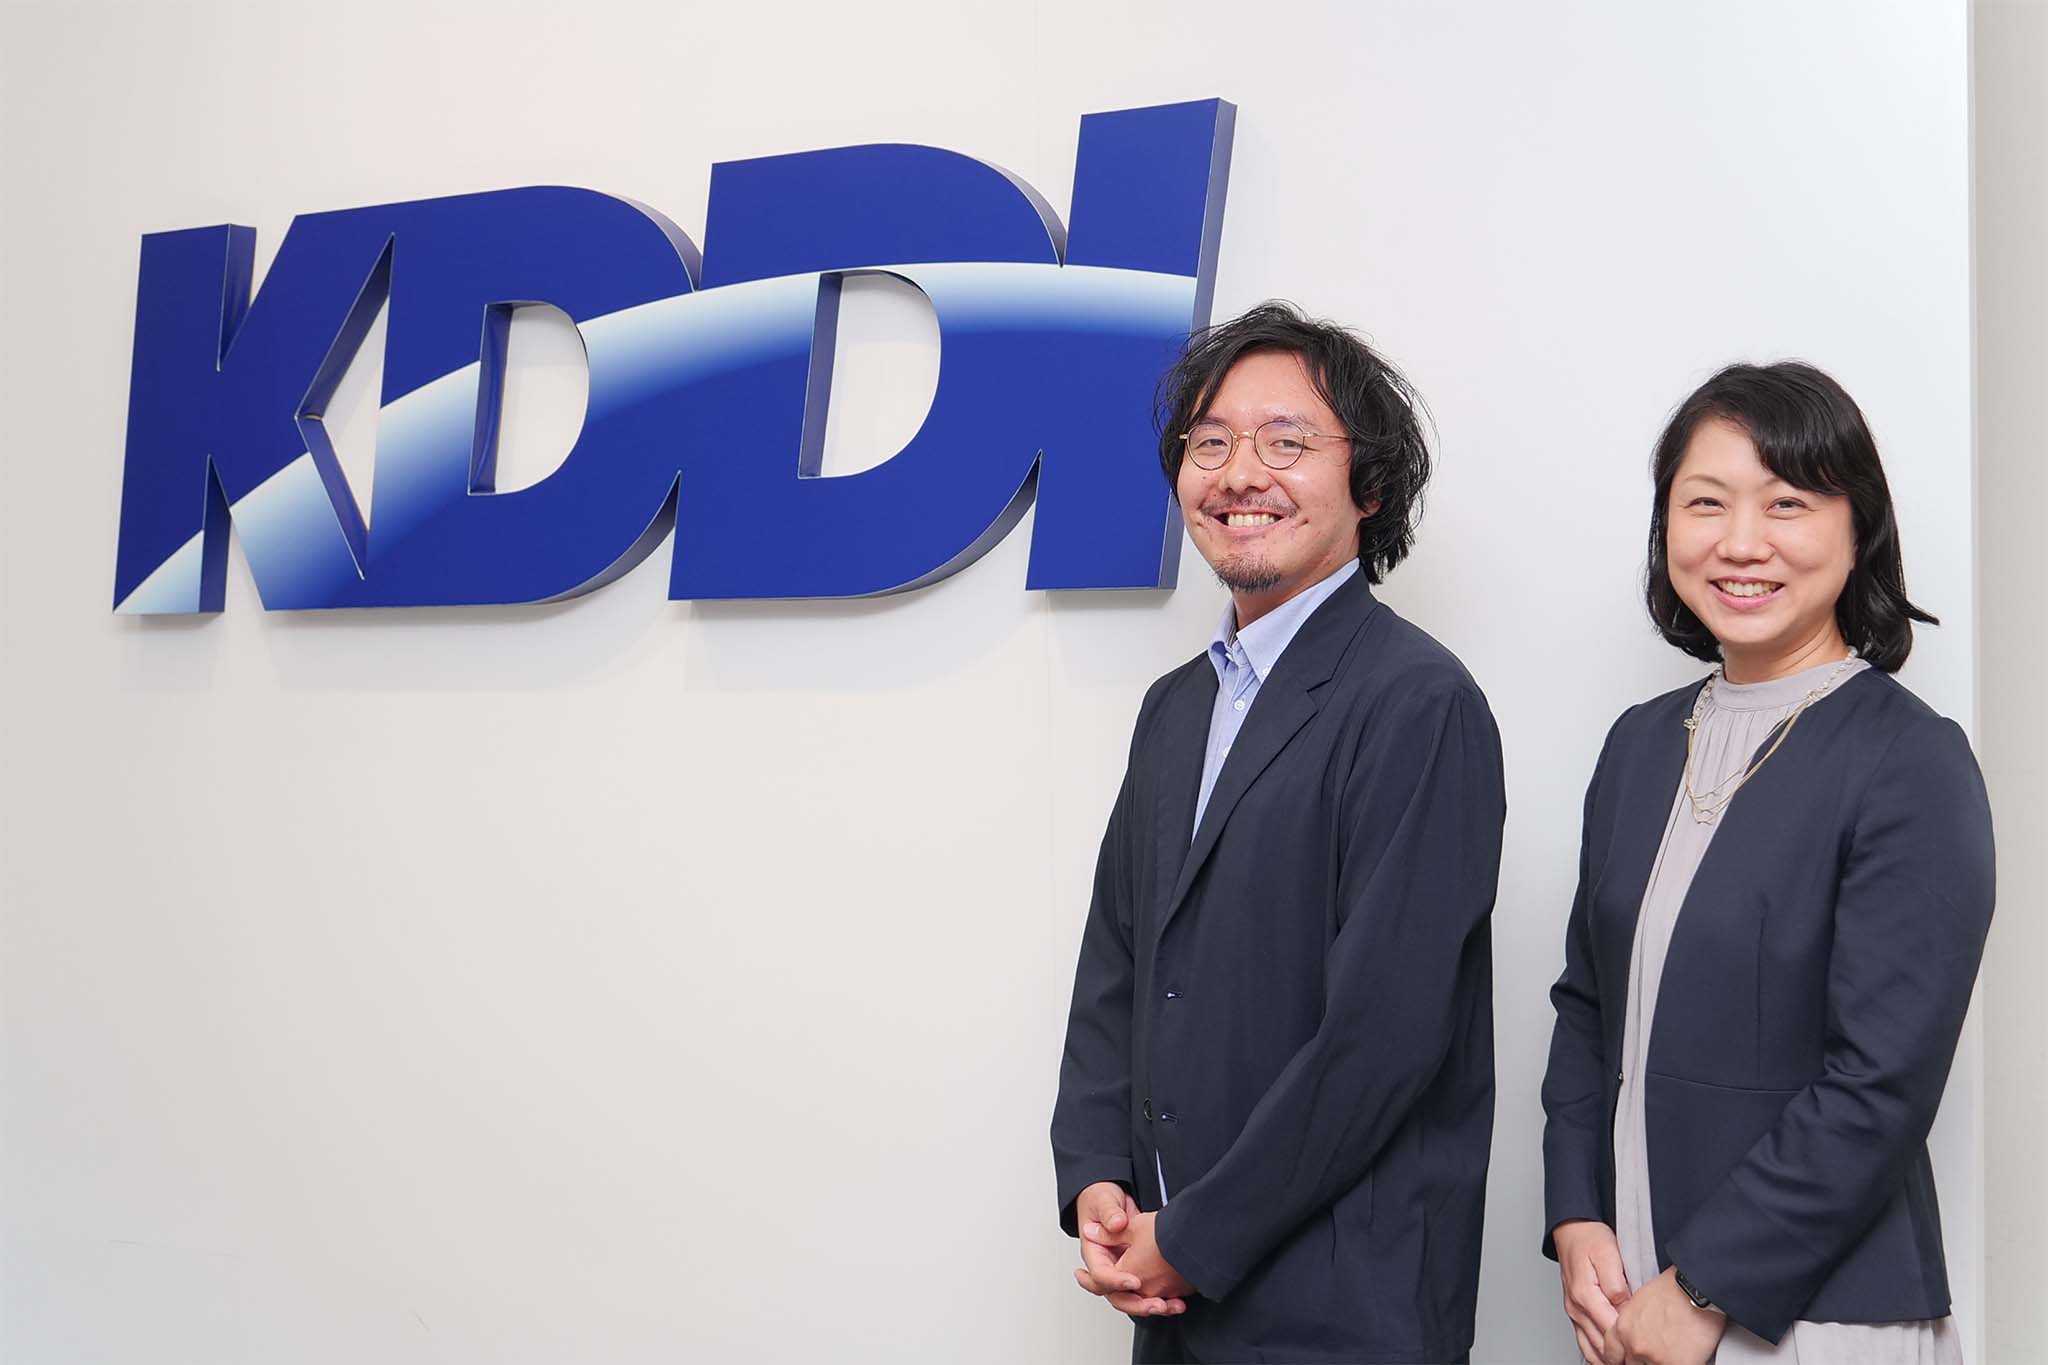 KDDI株式会社